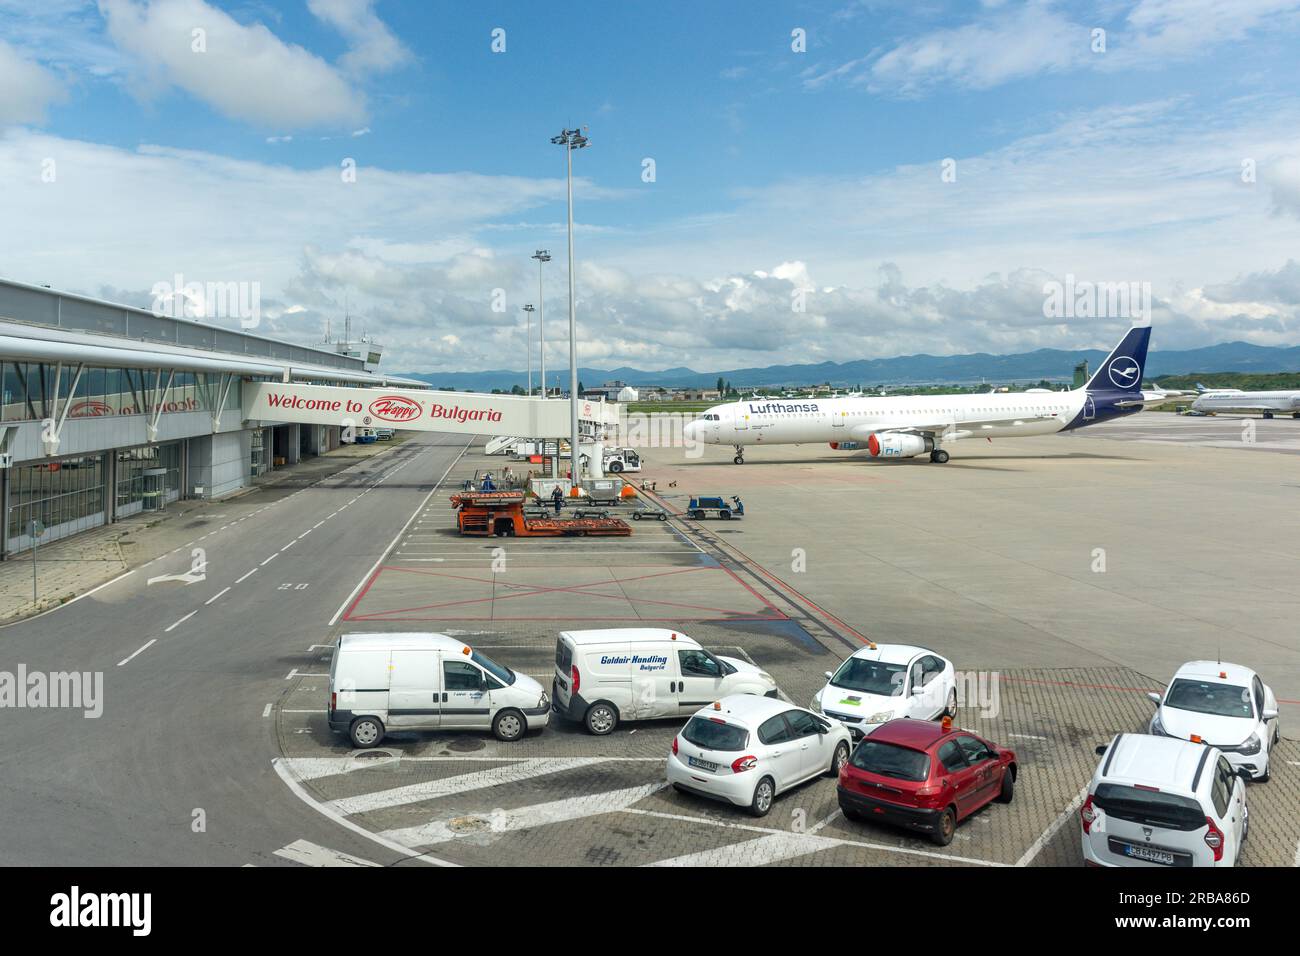 Aéroport international de Sofia, boulevard Tsarigradsko shose, Sofia, République de Bulgarie Banque D'Images